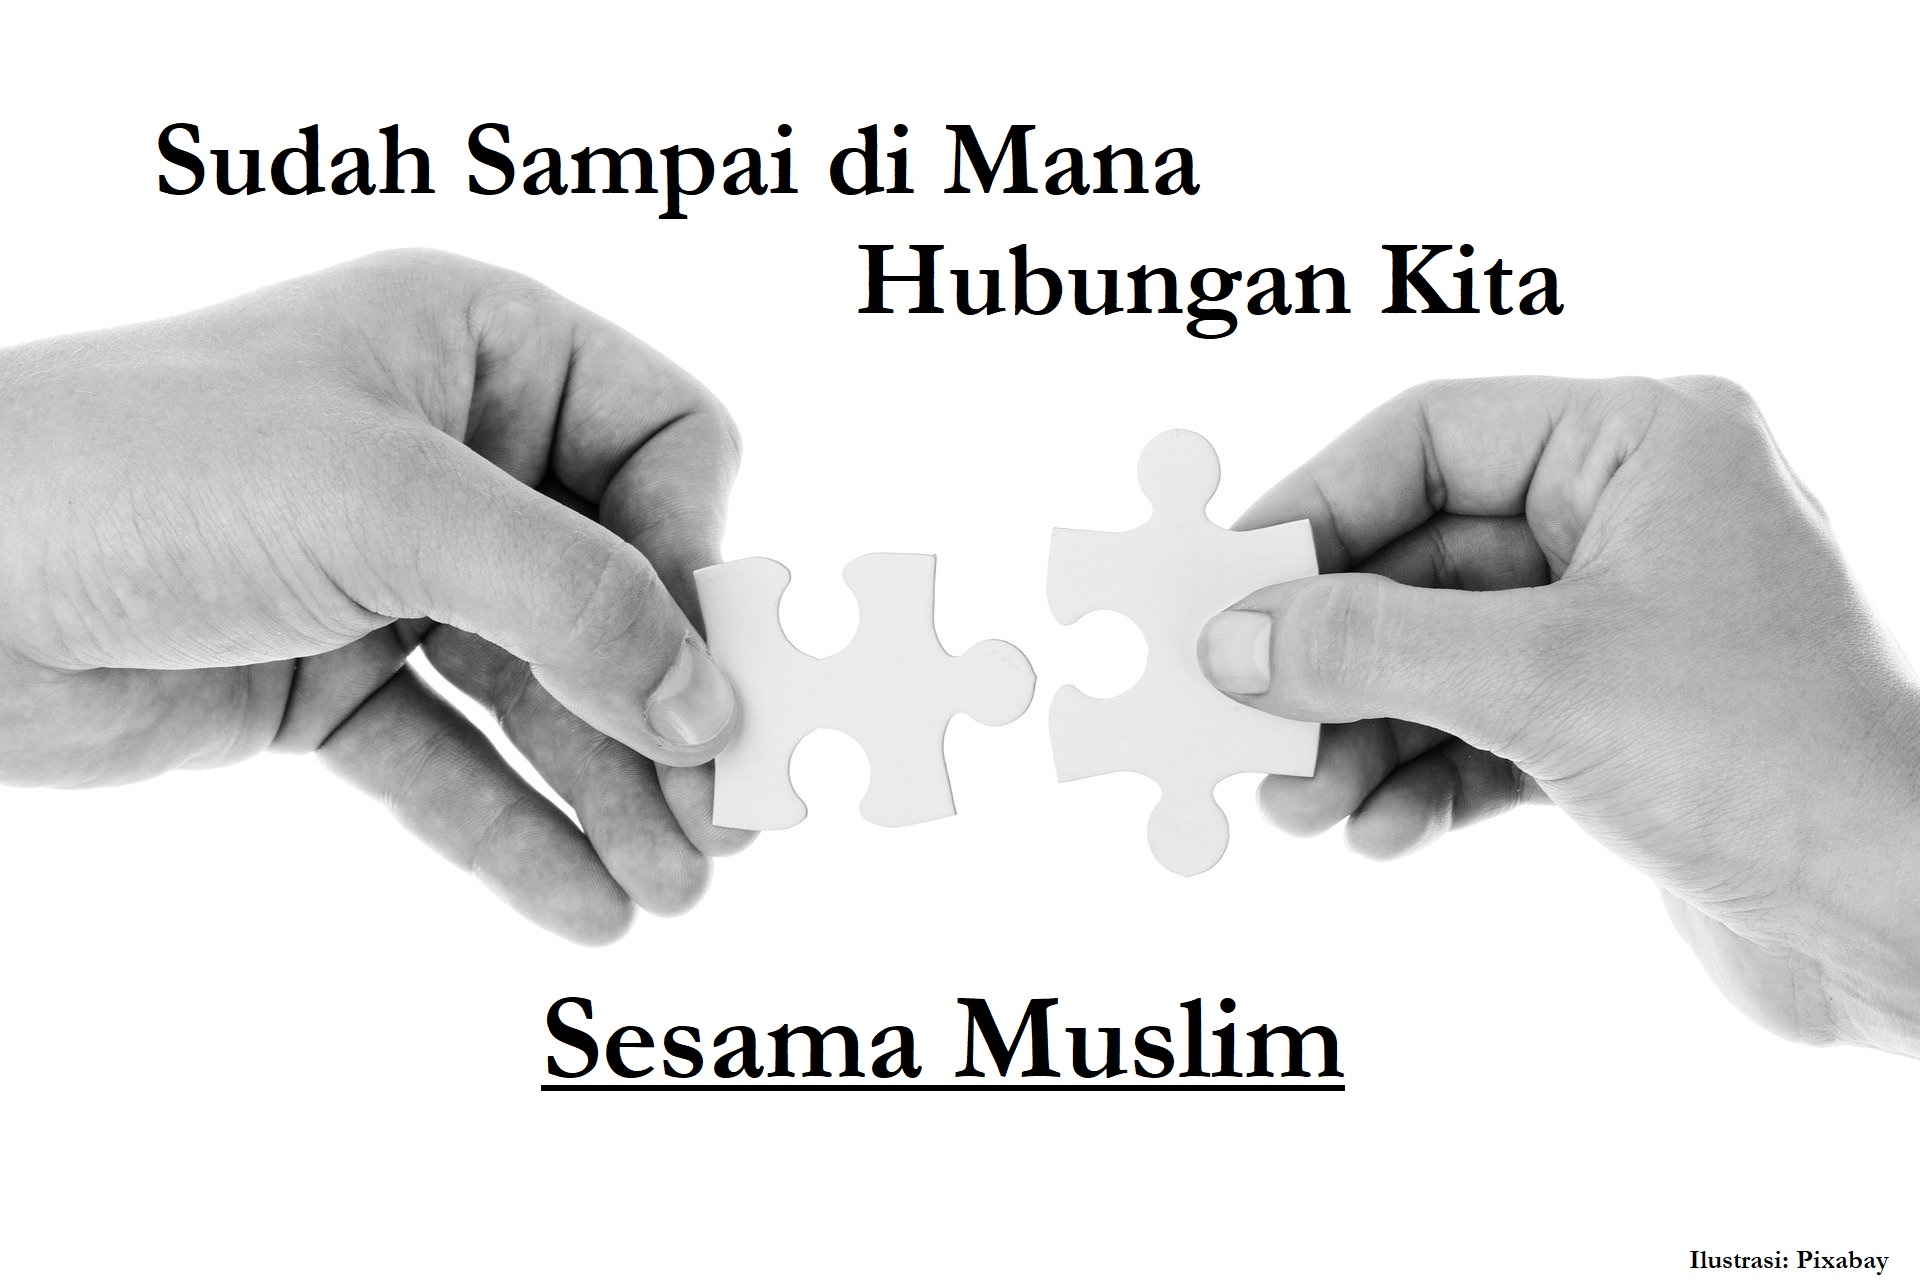 Sudah sampai di mana hubungan kita sesama muslim